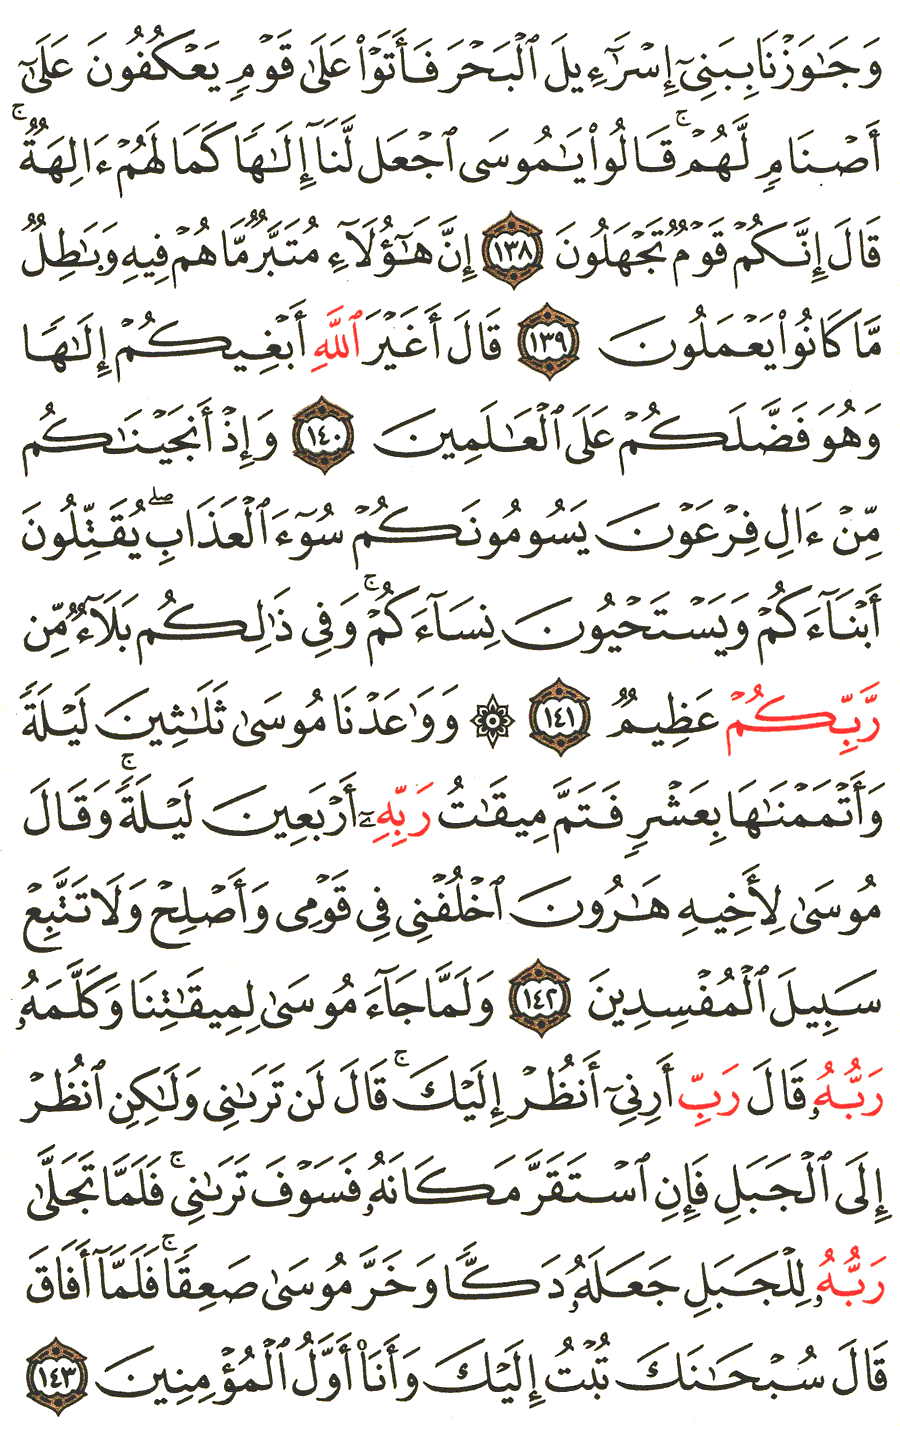 الصفحة 167 من القرآن الكريم